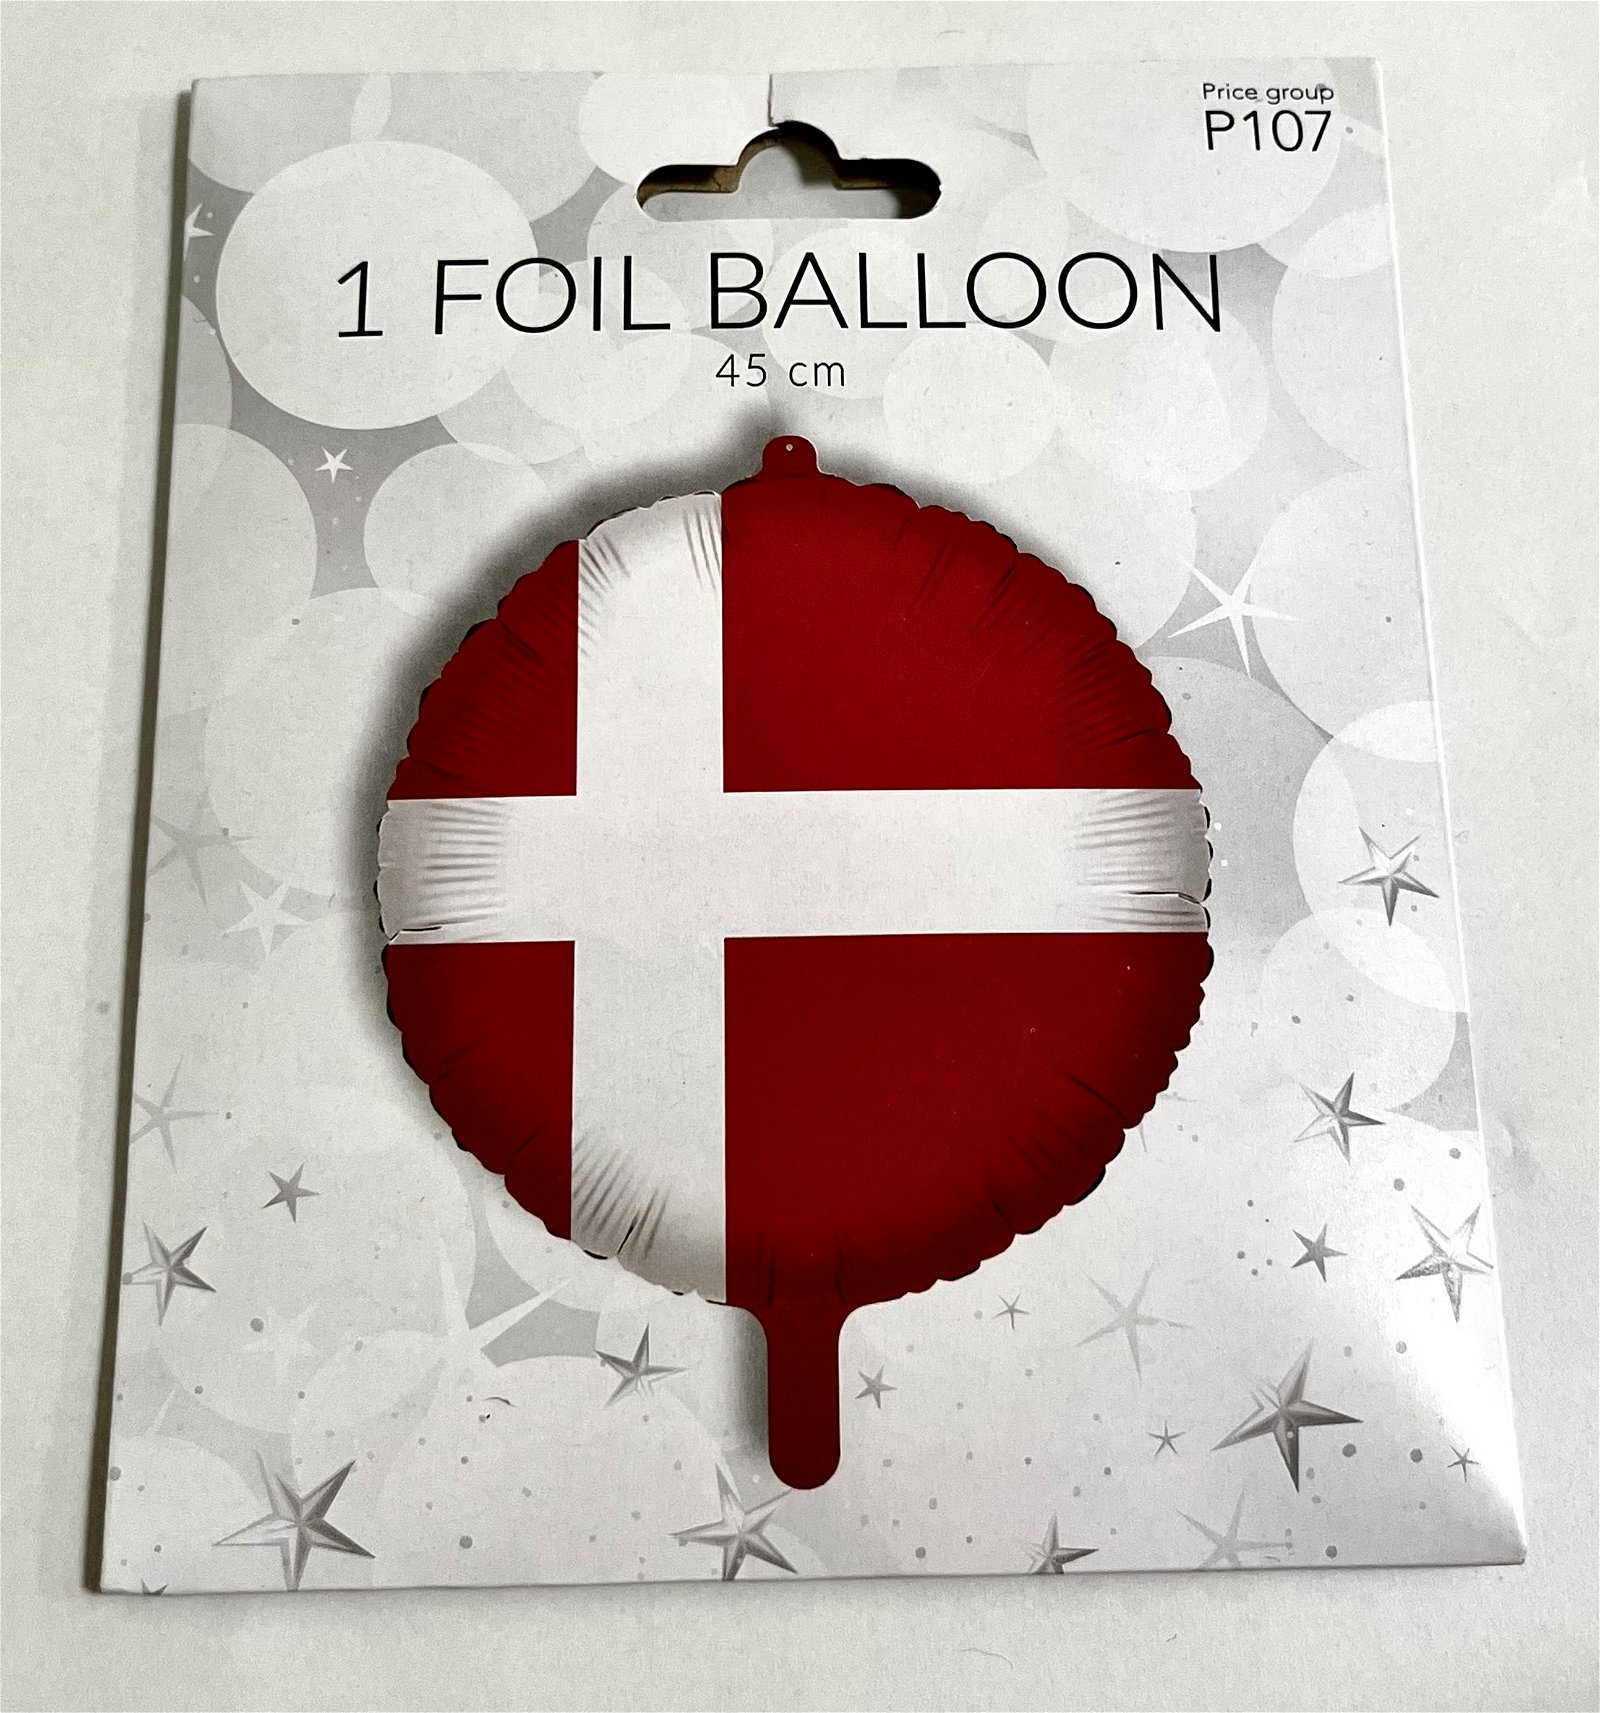 Foil Ballon 45cm 